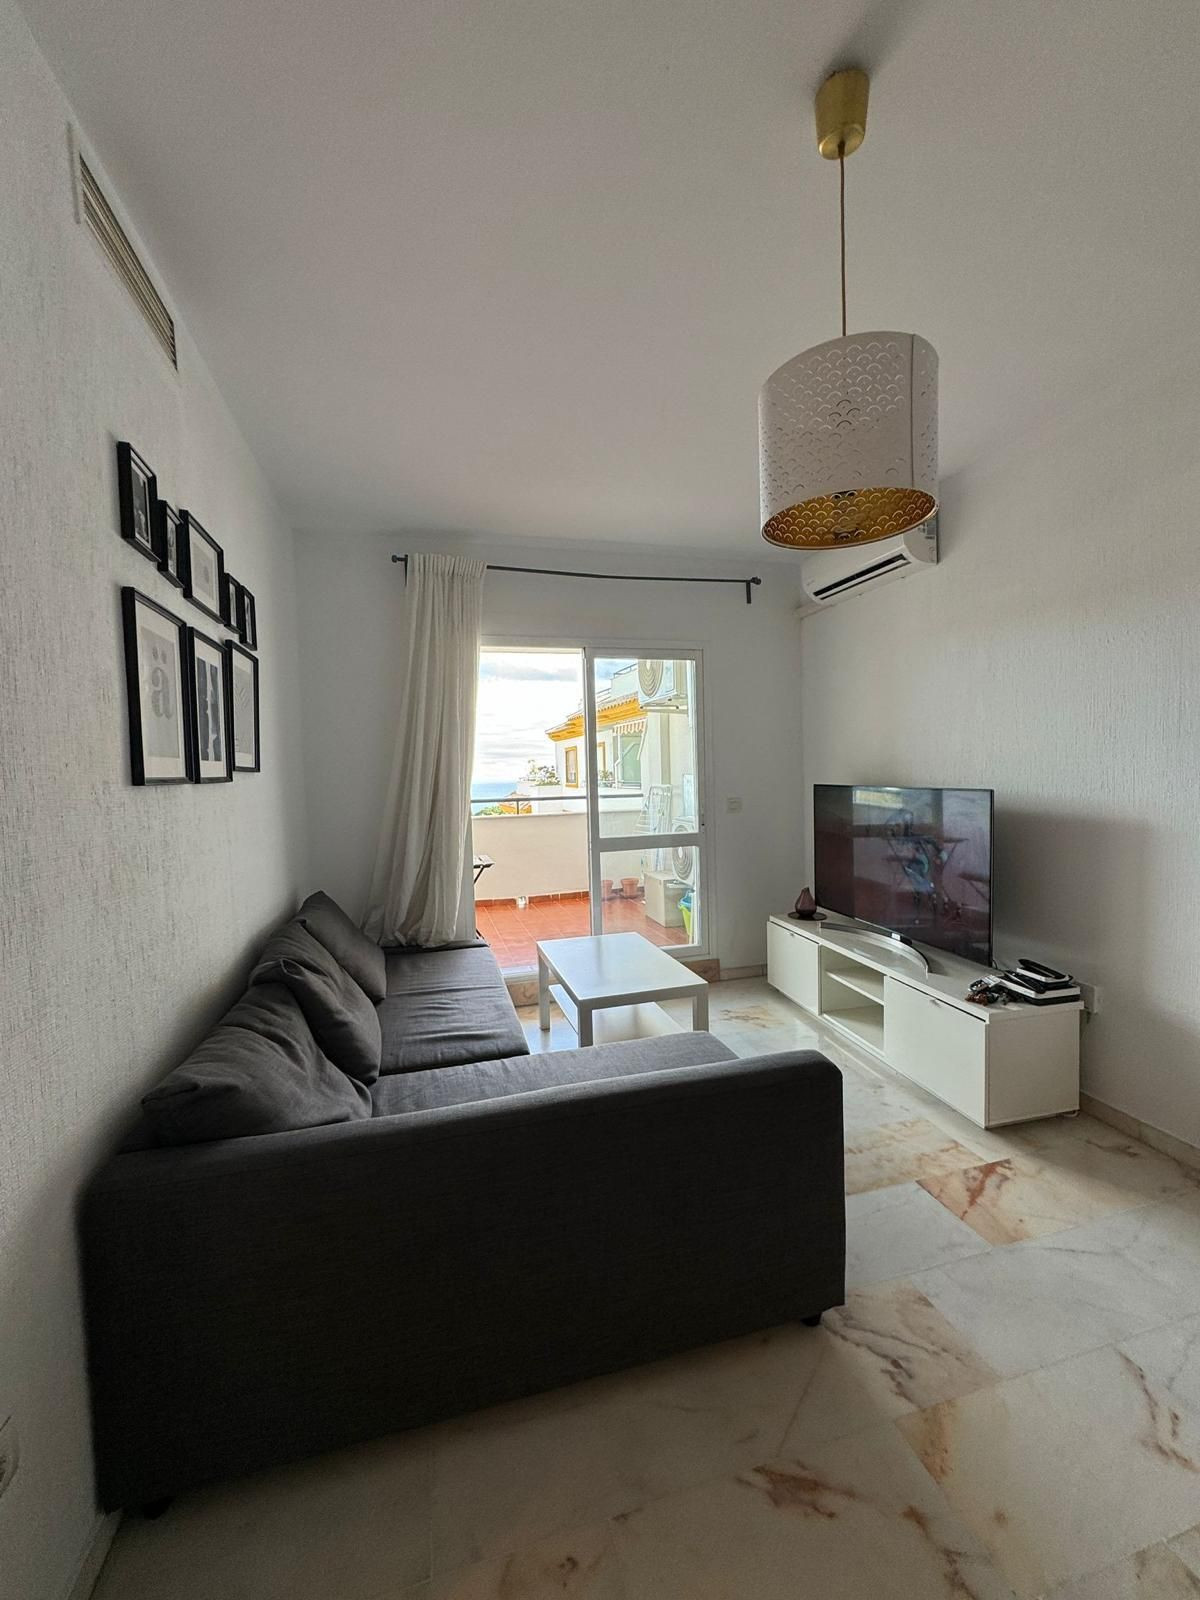 2 Dormitorios Apartamento Planta Media  En Venta Benalmadena, Costa del Sol - HP4654822